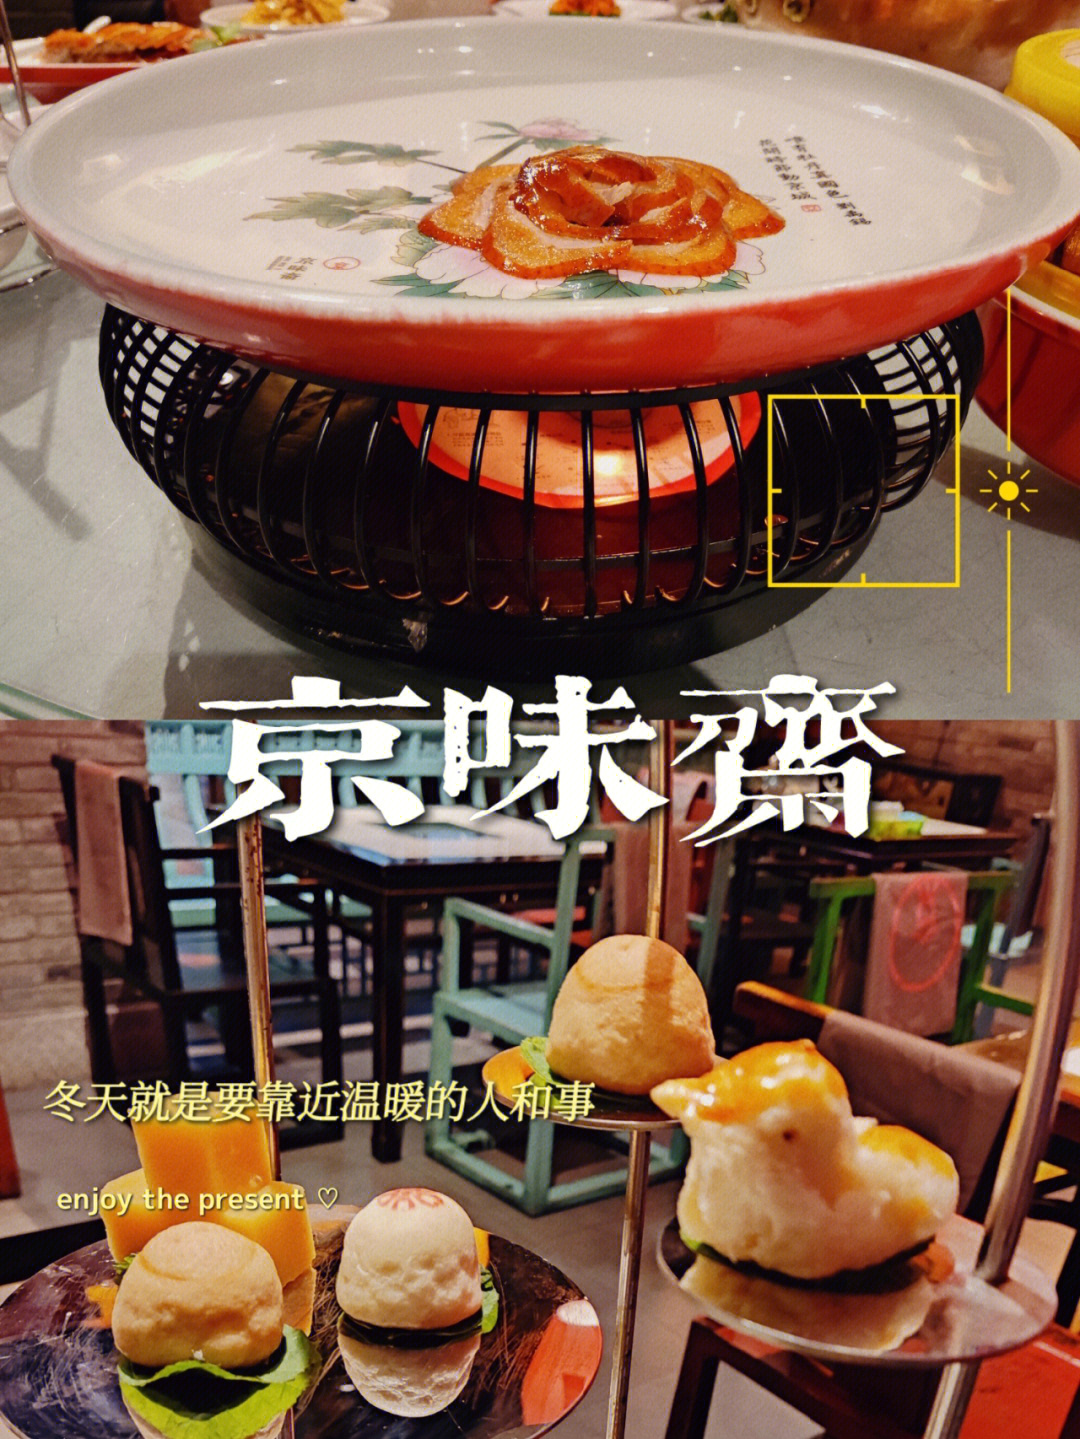 京味斋烤鸭店菜单图片